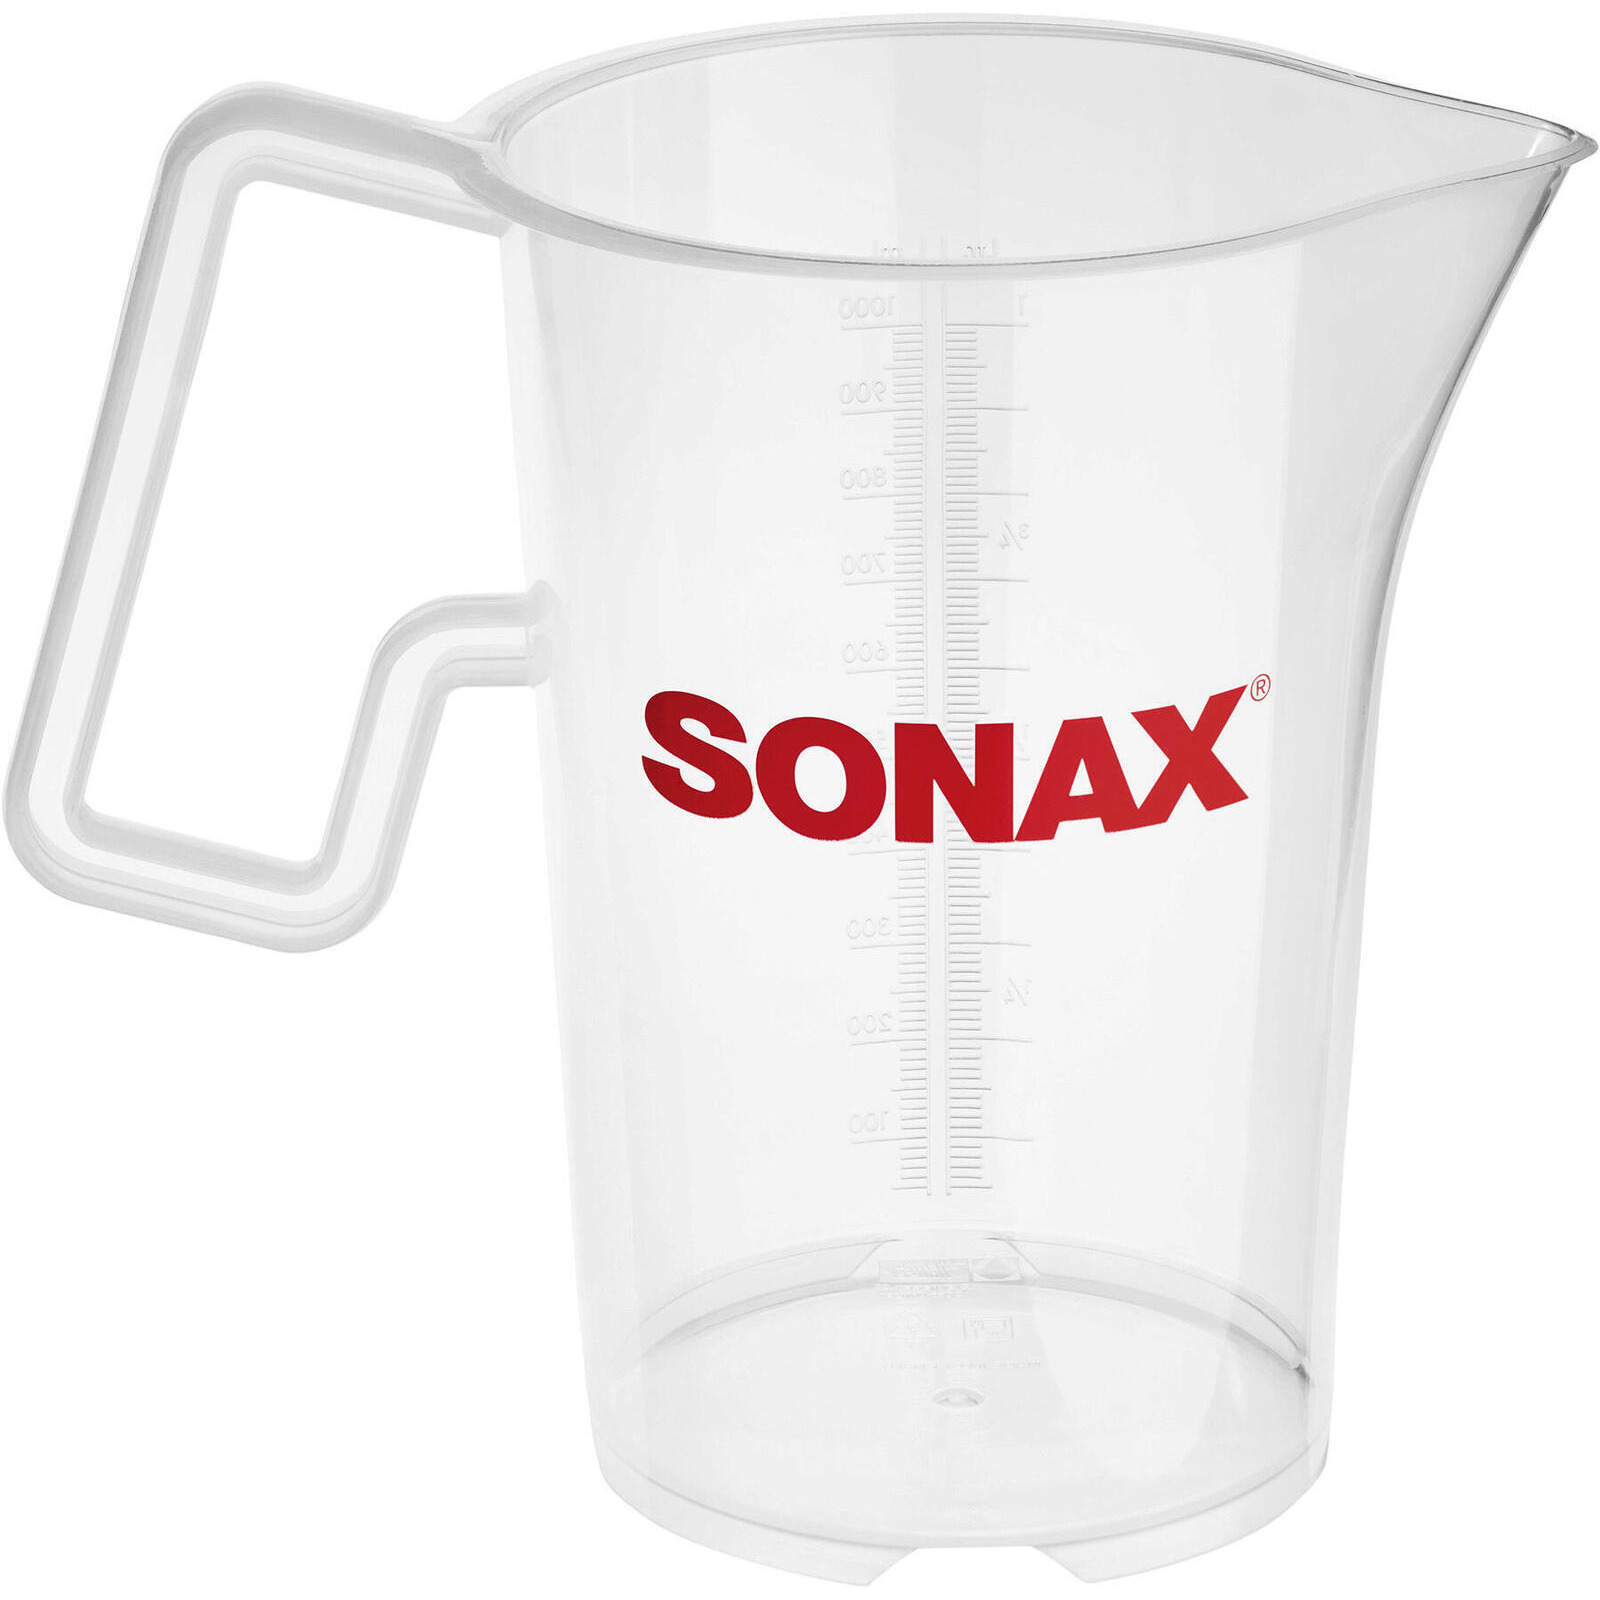 SONAX Measuring Cup Measuring cup